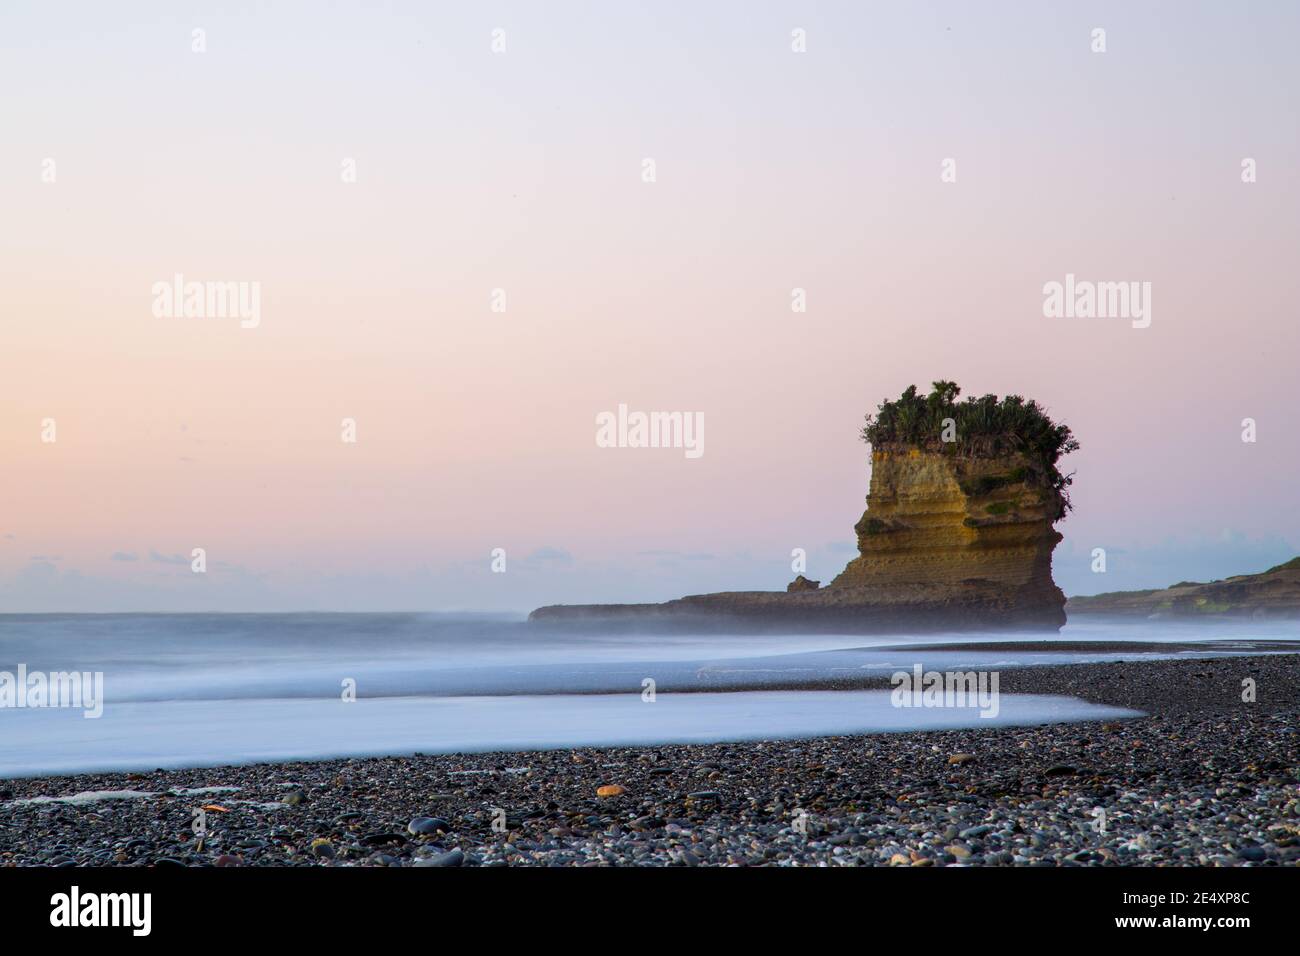 Punakaiki Beach in New Zealand Stock Photo